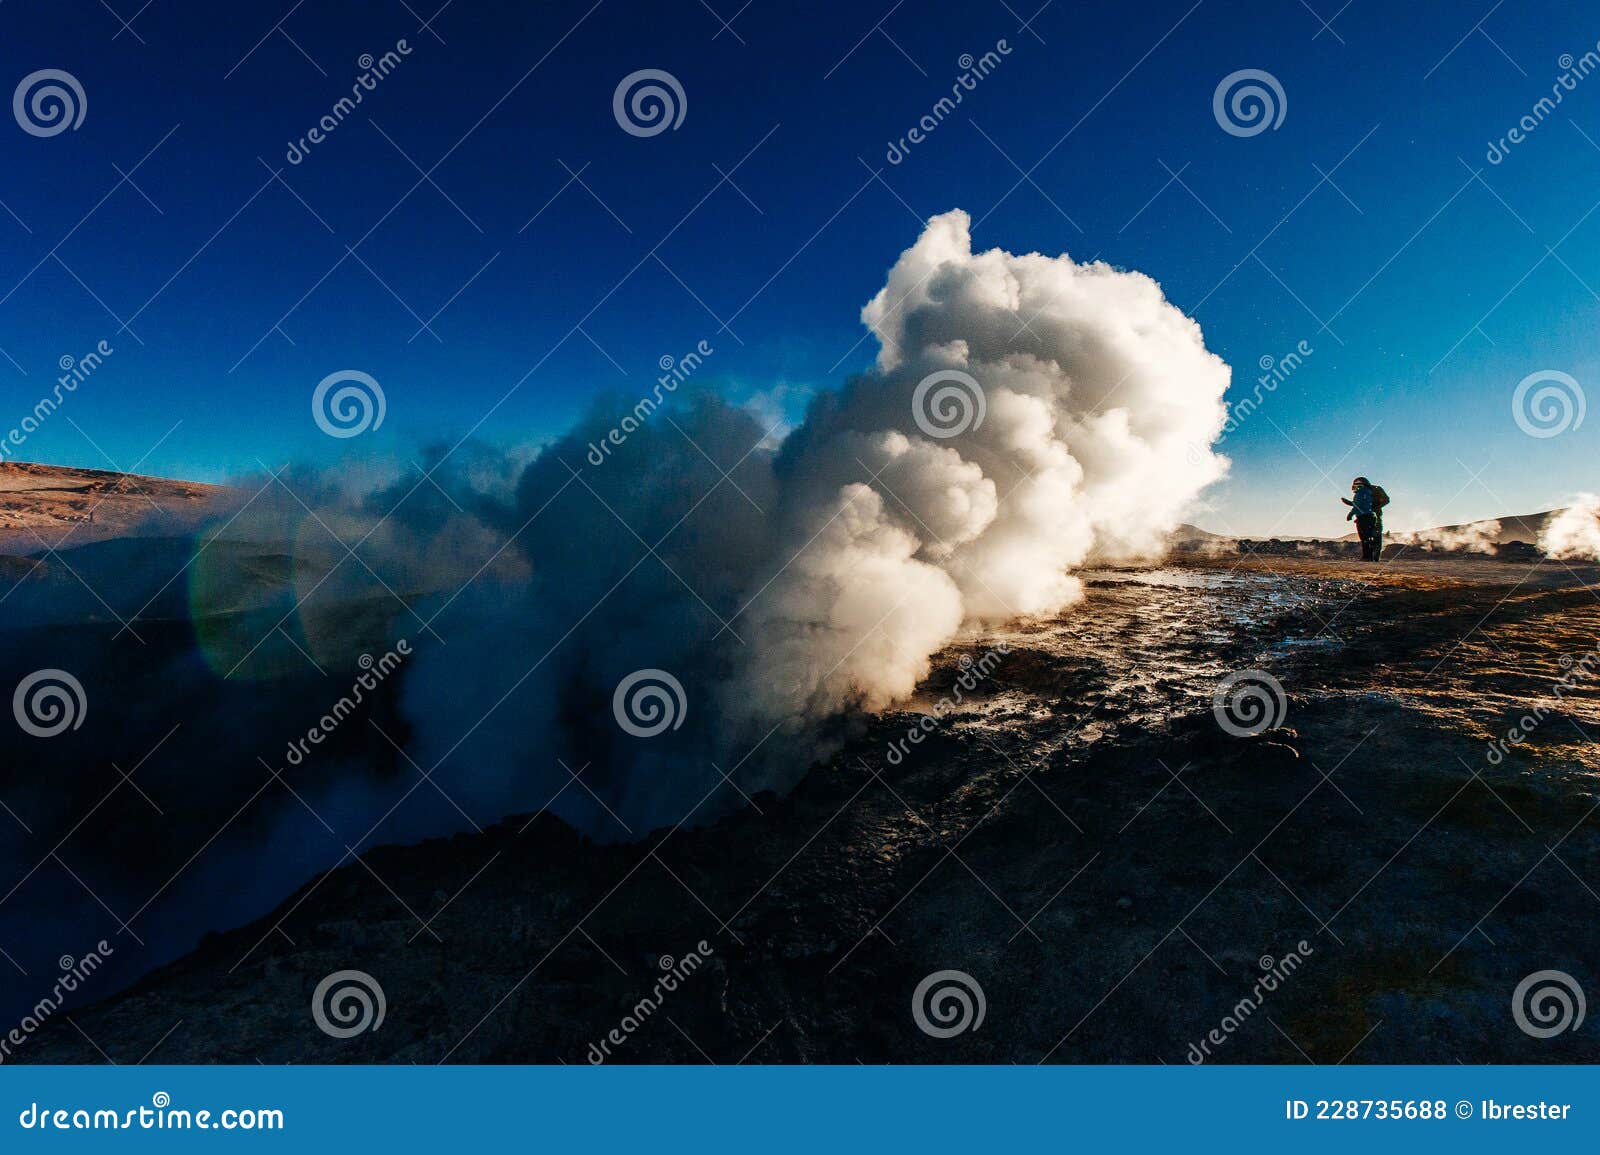 a man in the geysers at bolivian highlands sol de la manana, uyuni desert - december, 2018